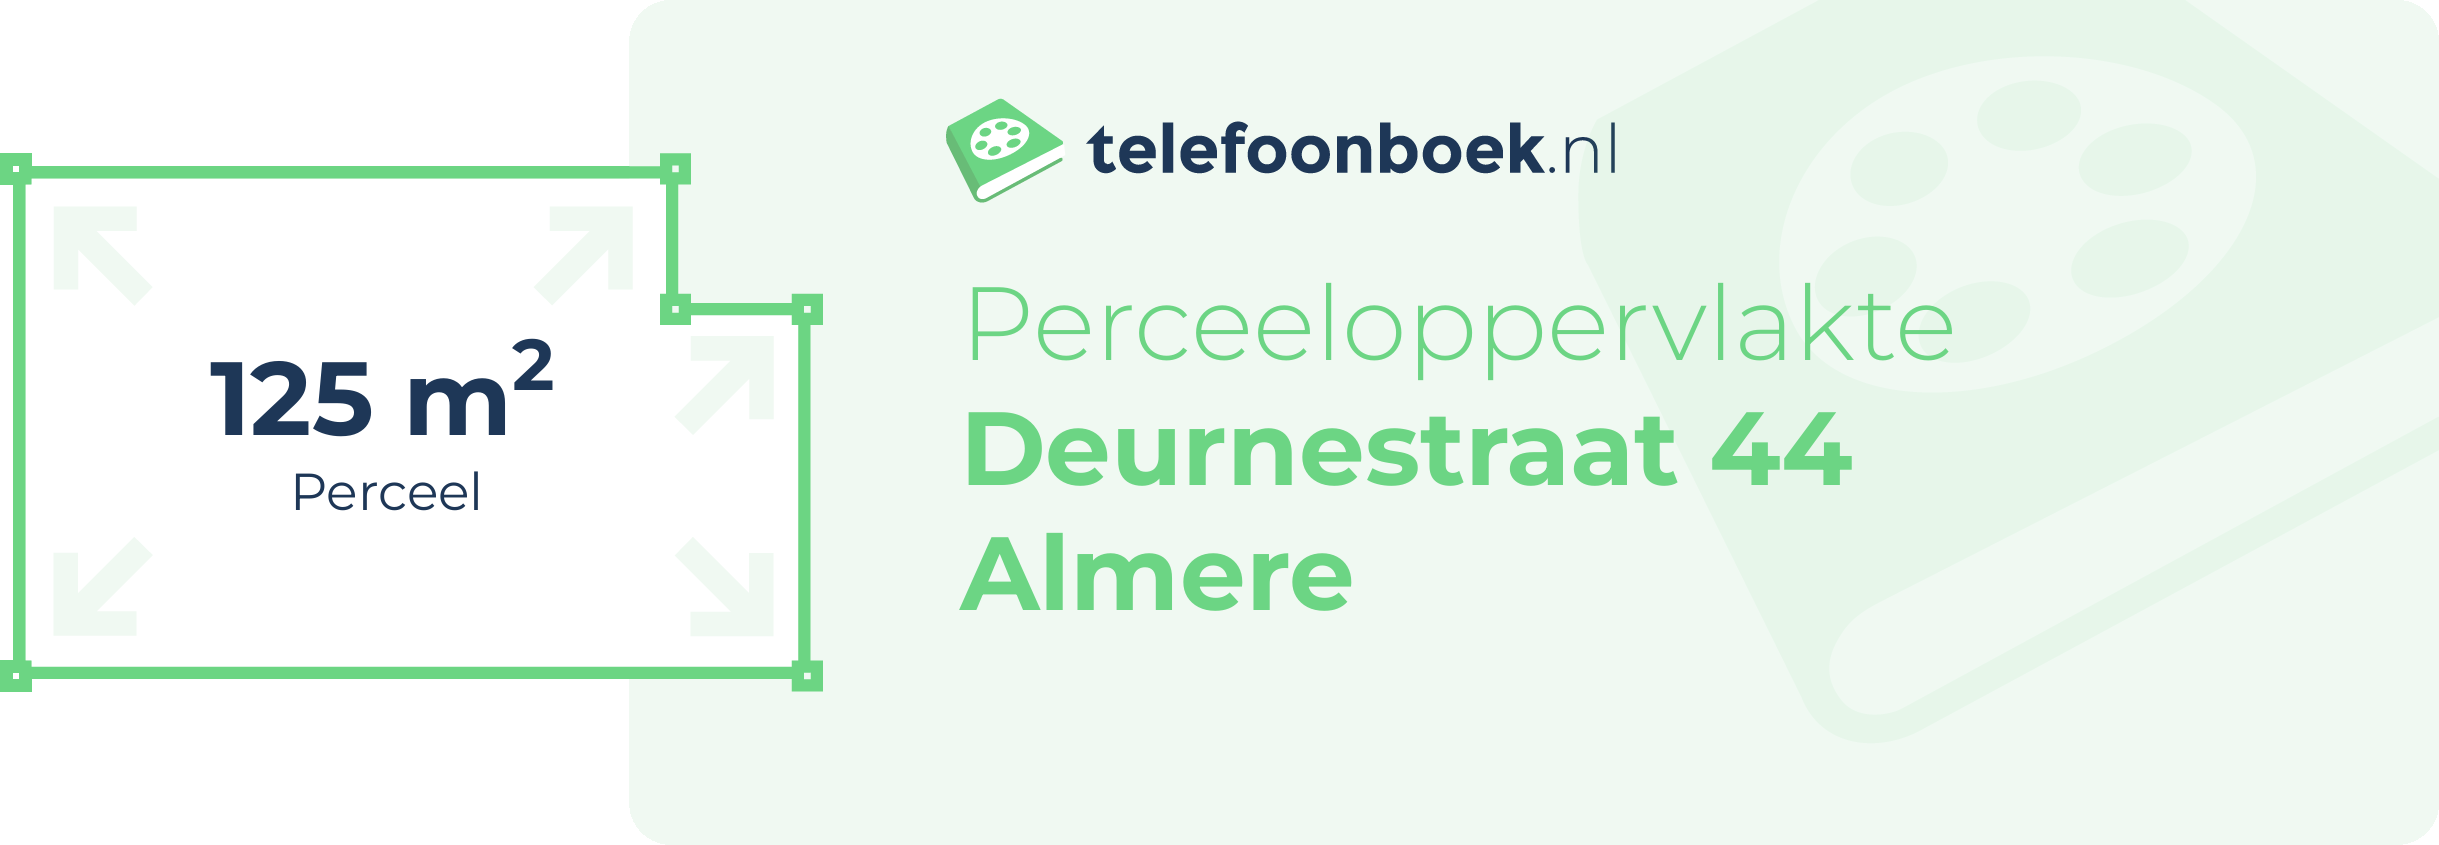 Perceeloppervlakte Deurnestraat 44 Almere